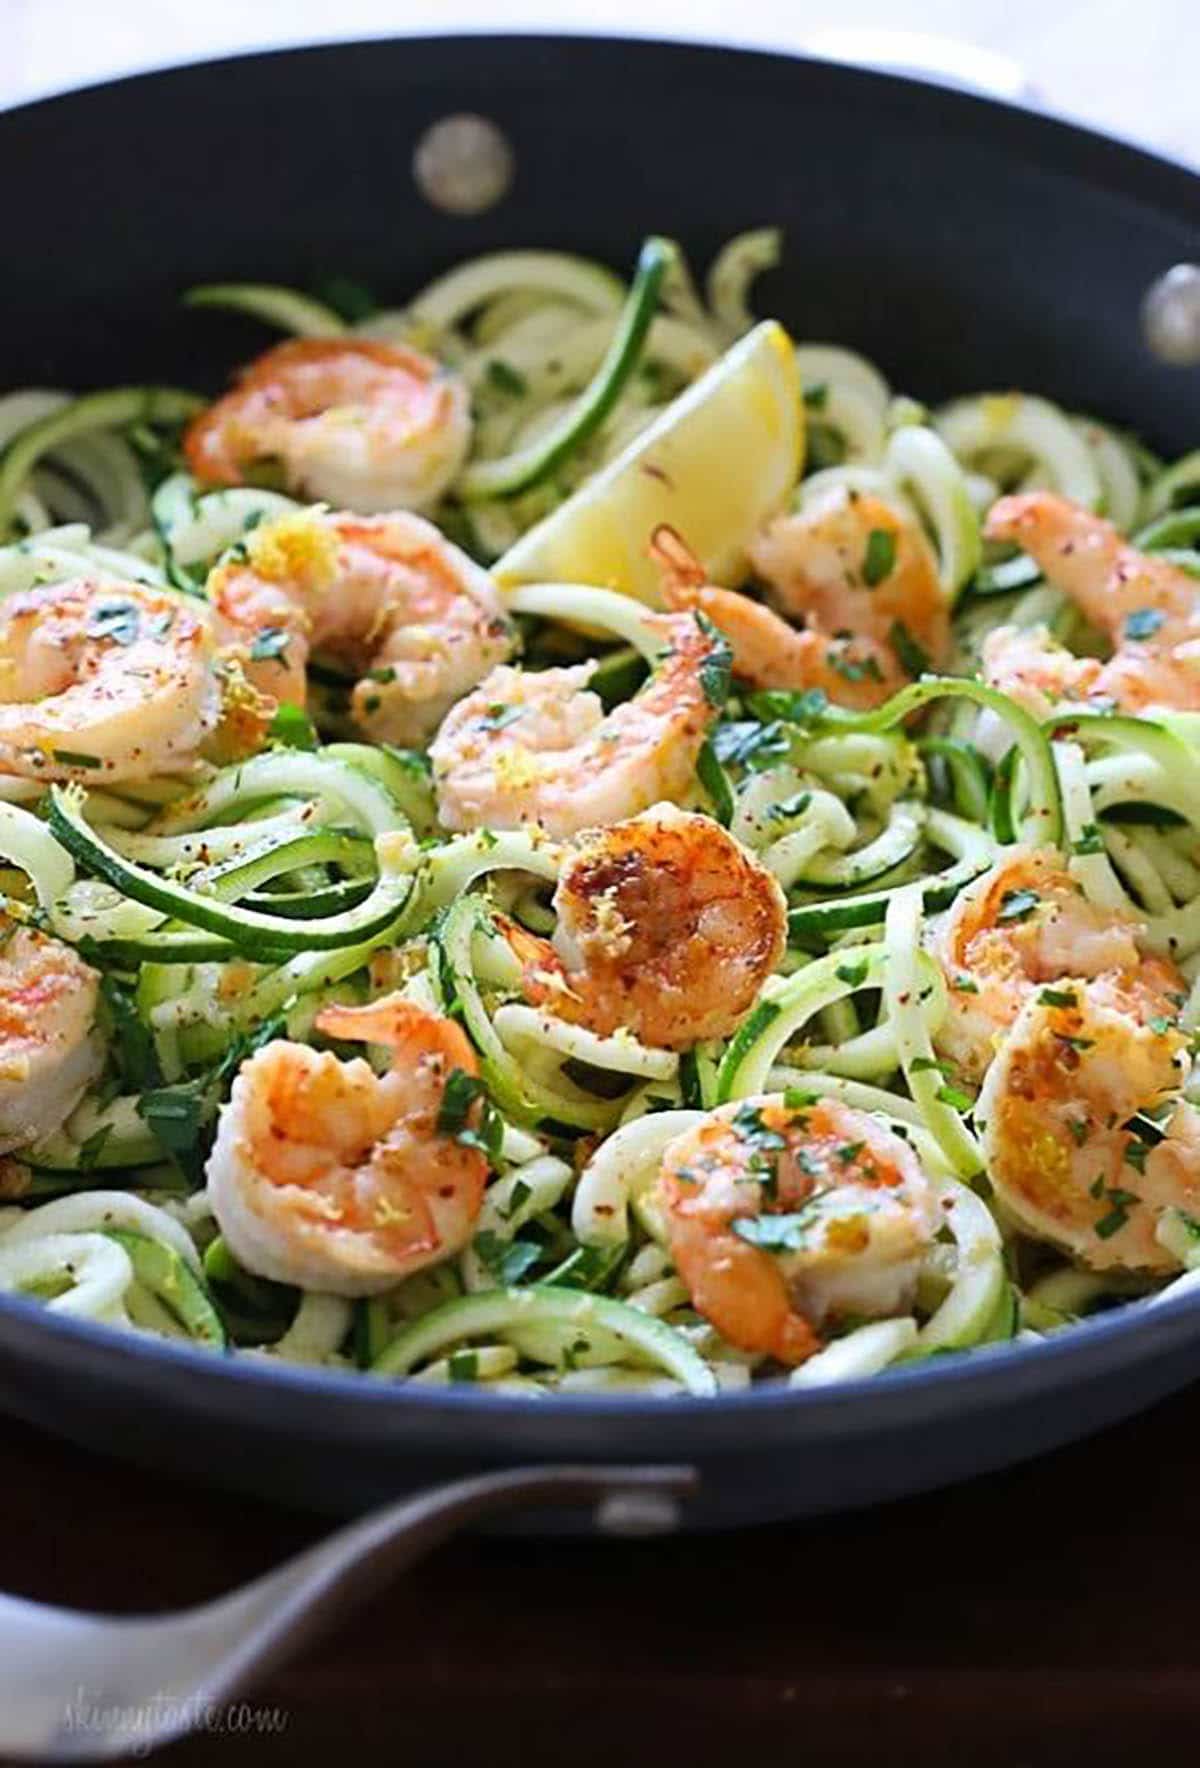 Shrimp Scampi Zoodles - a delicious garlic shrimp and lemon dish over zucchini noodles